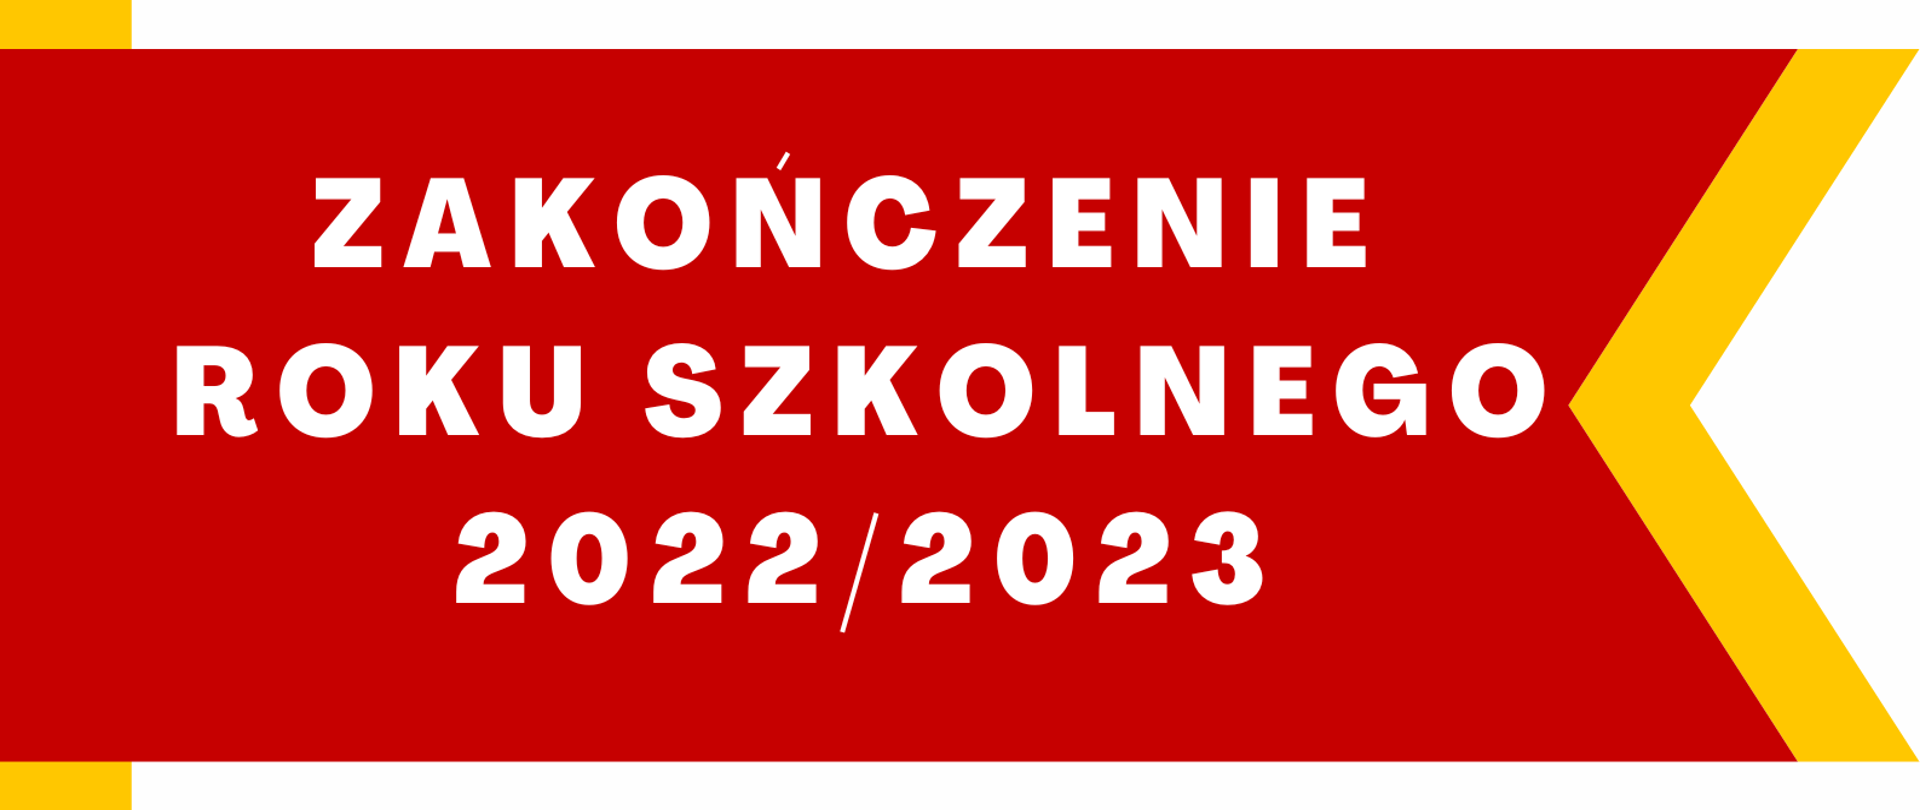 Plakat na białym tle z logo szkoły w prawy dolnym rogu, ikonografią nut na kluczu wiolinowym i tekstem "Zakończenie roku szkolnego 2022/23 - 24 czerwca godz.13.00" 